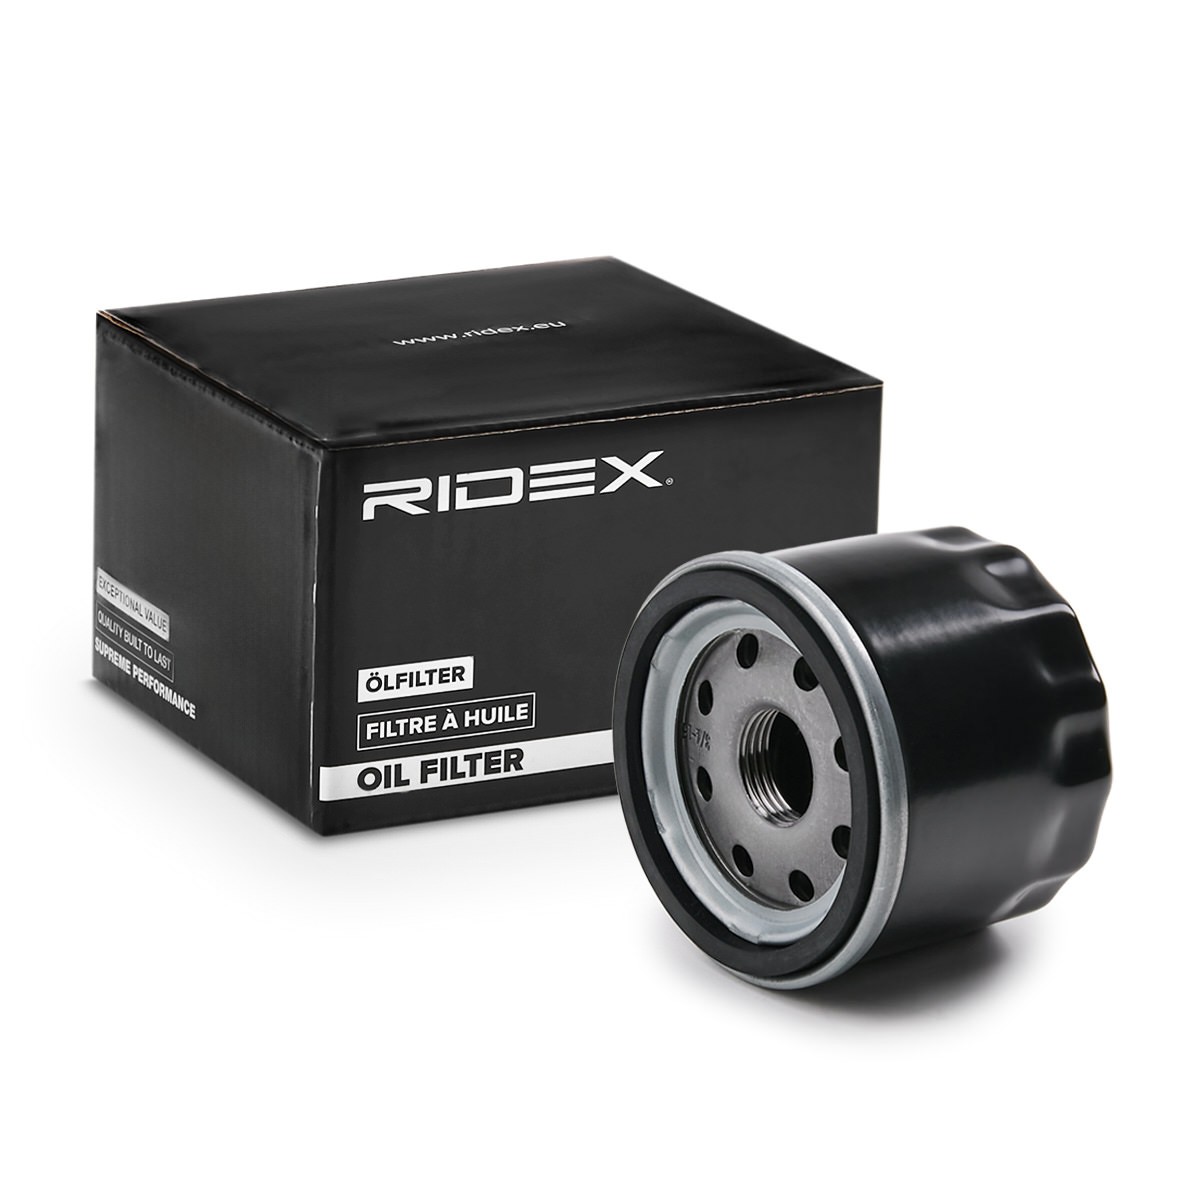 RIDEX 7O0374 Oil filter Spin-on Filter